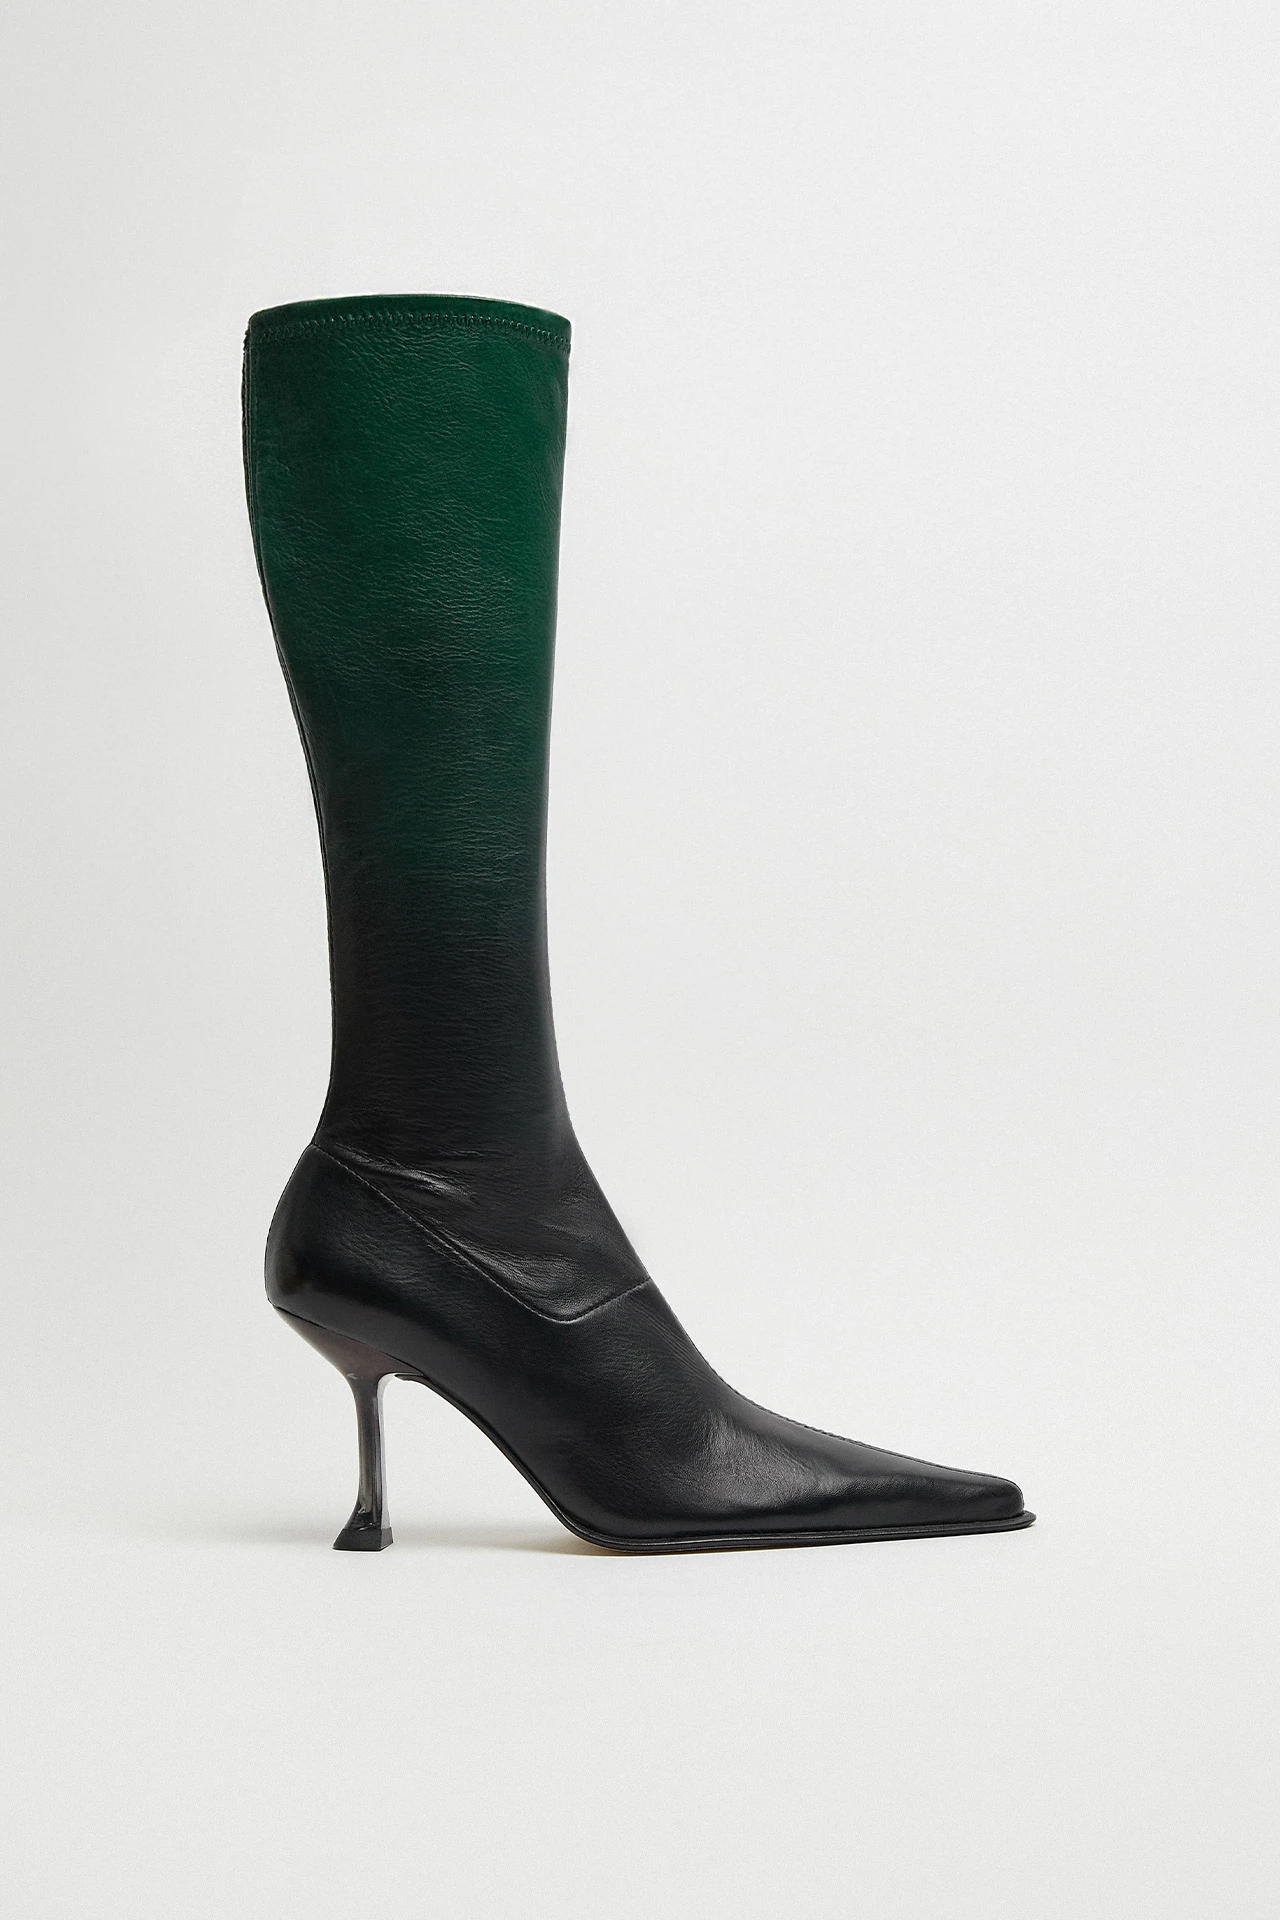 Miista-Carlita-Green-Black-Degradee-Tall-Boots-01